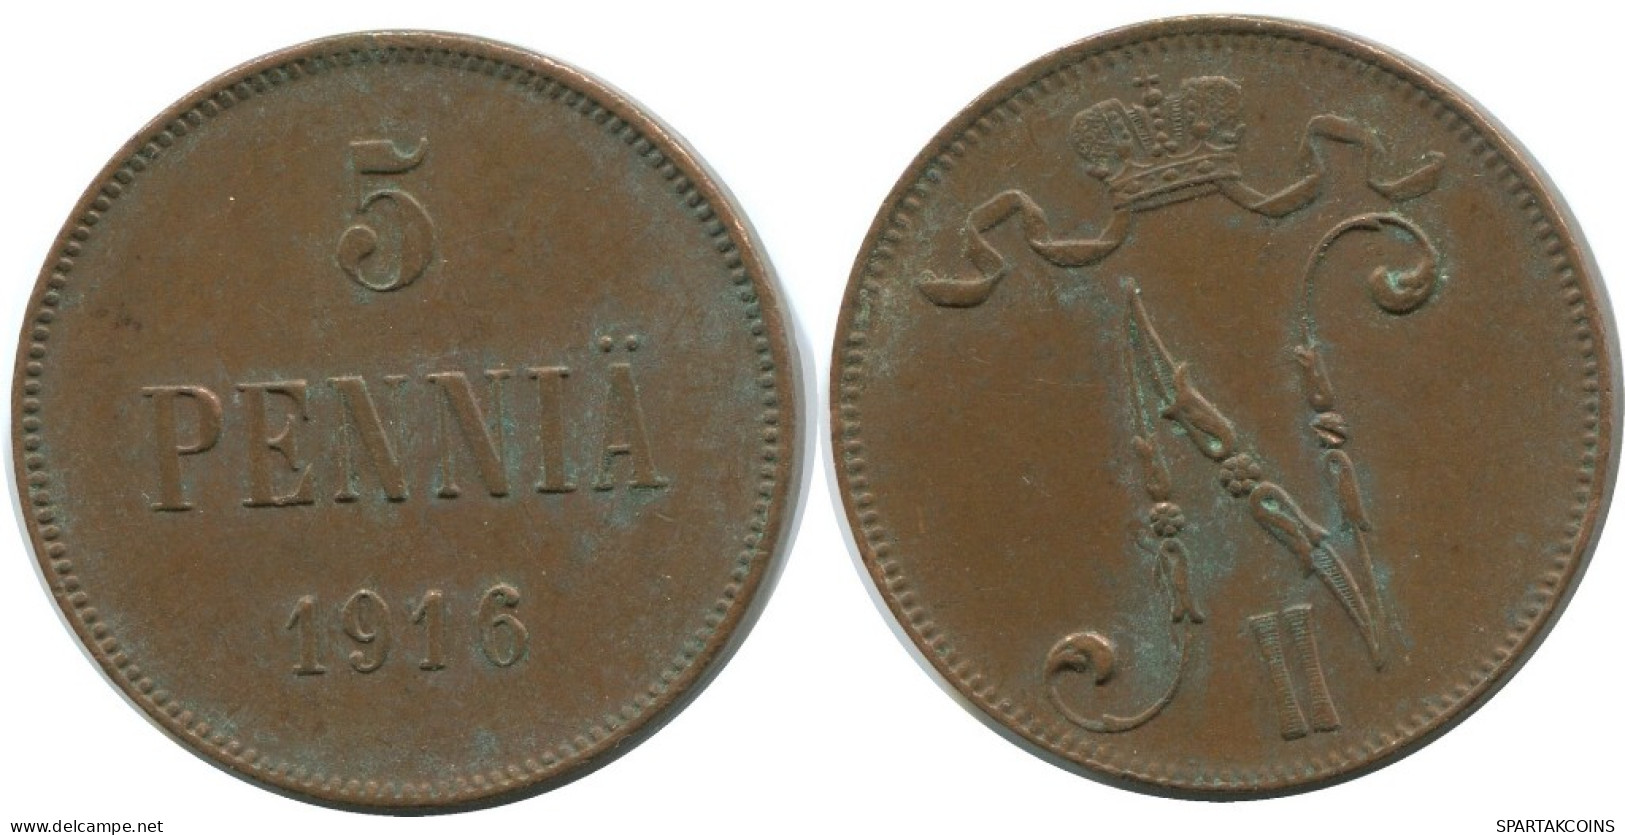 5 PENNIA 1916 FINLAND Coin RUSSIA EMPIRE #AB178.5.U.A - Finlande